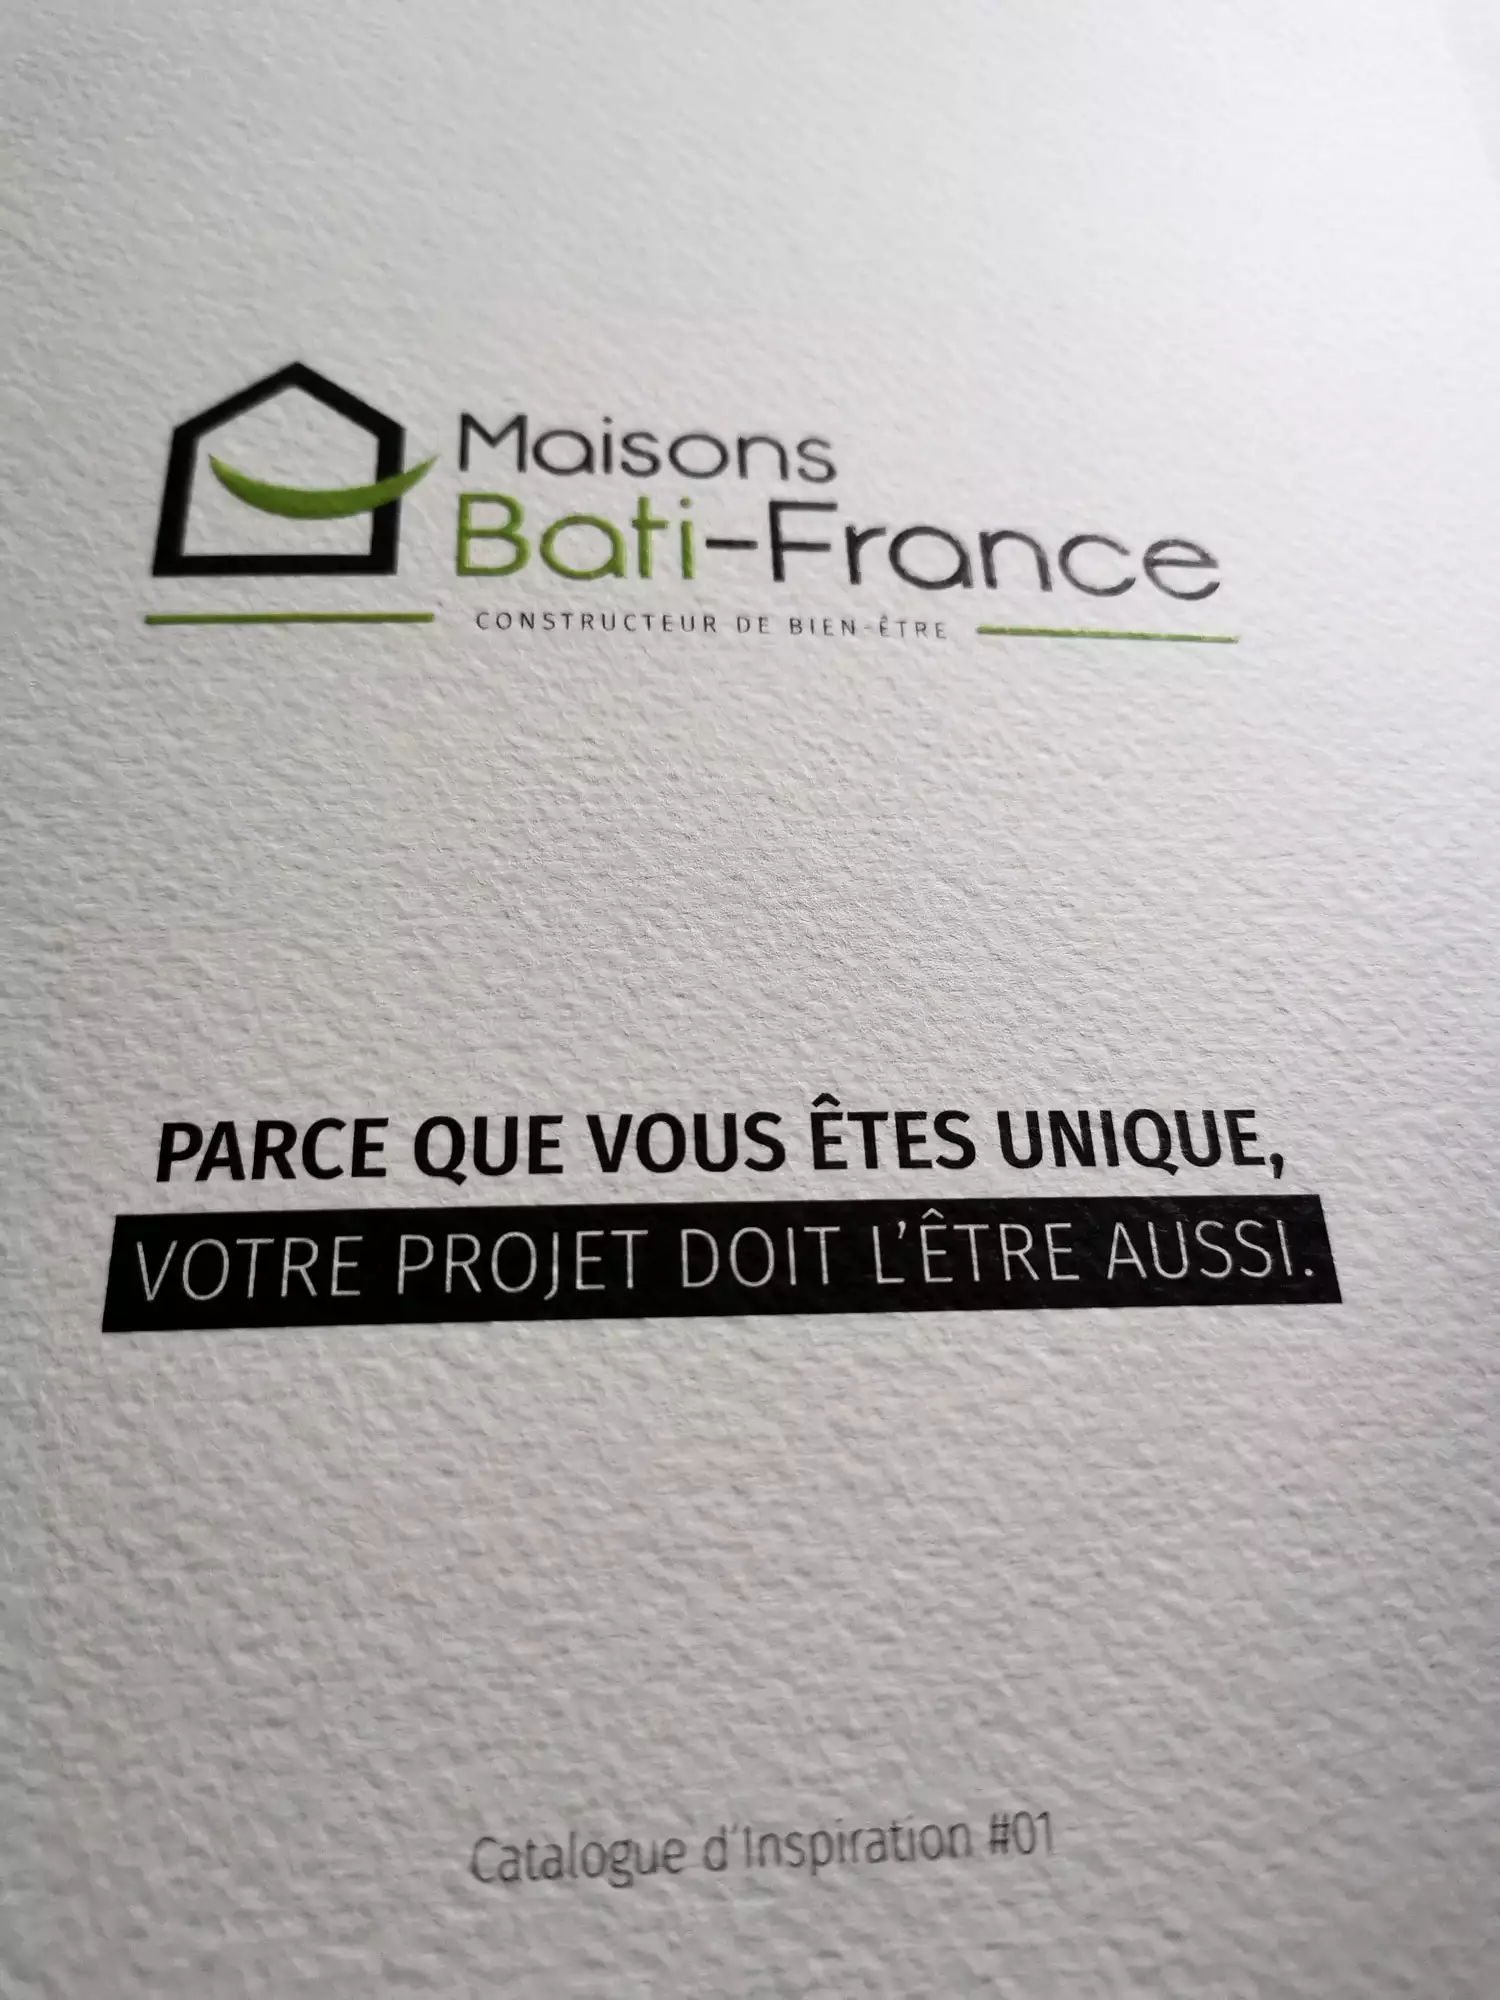 Maisons Bati France Constructeur Occitanie